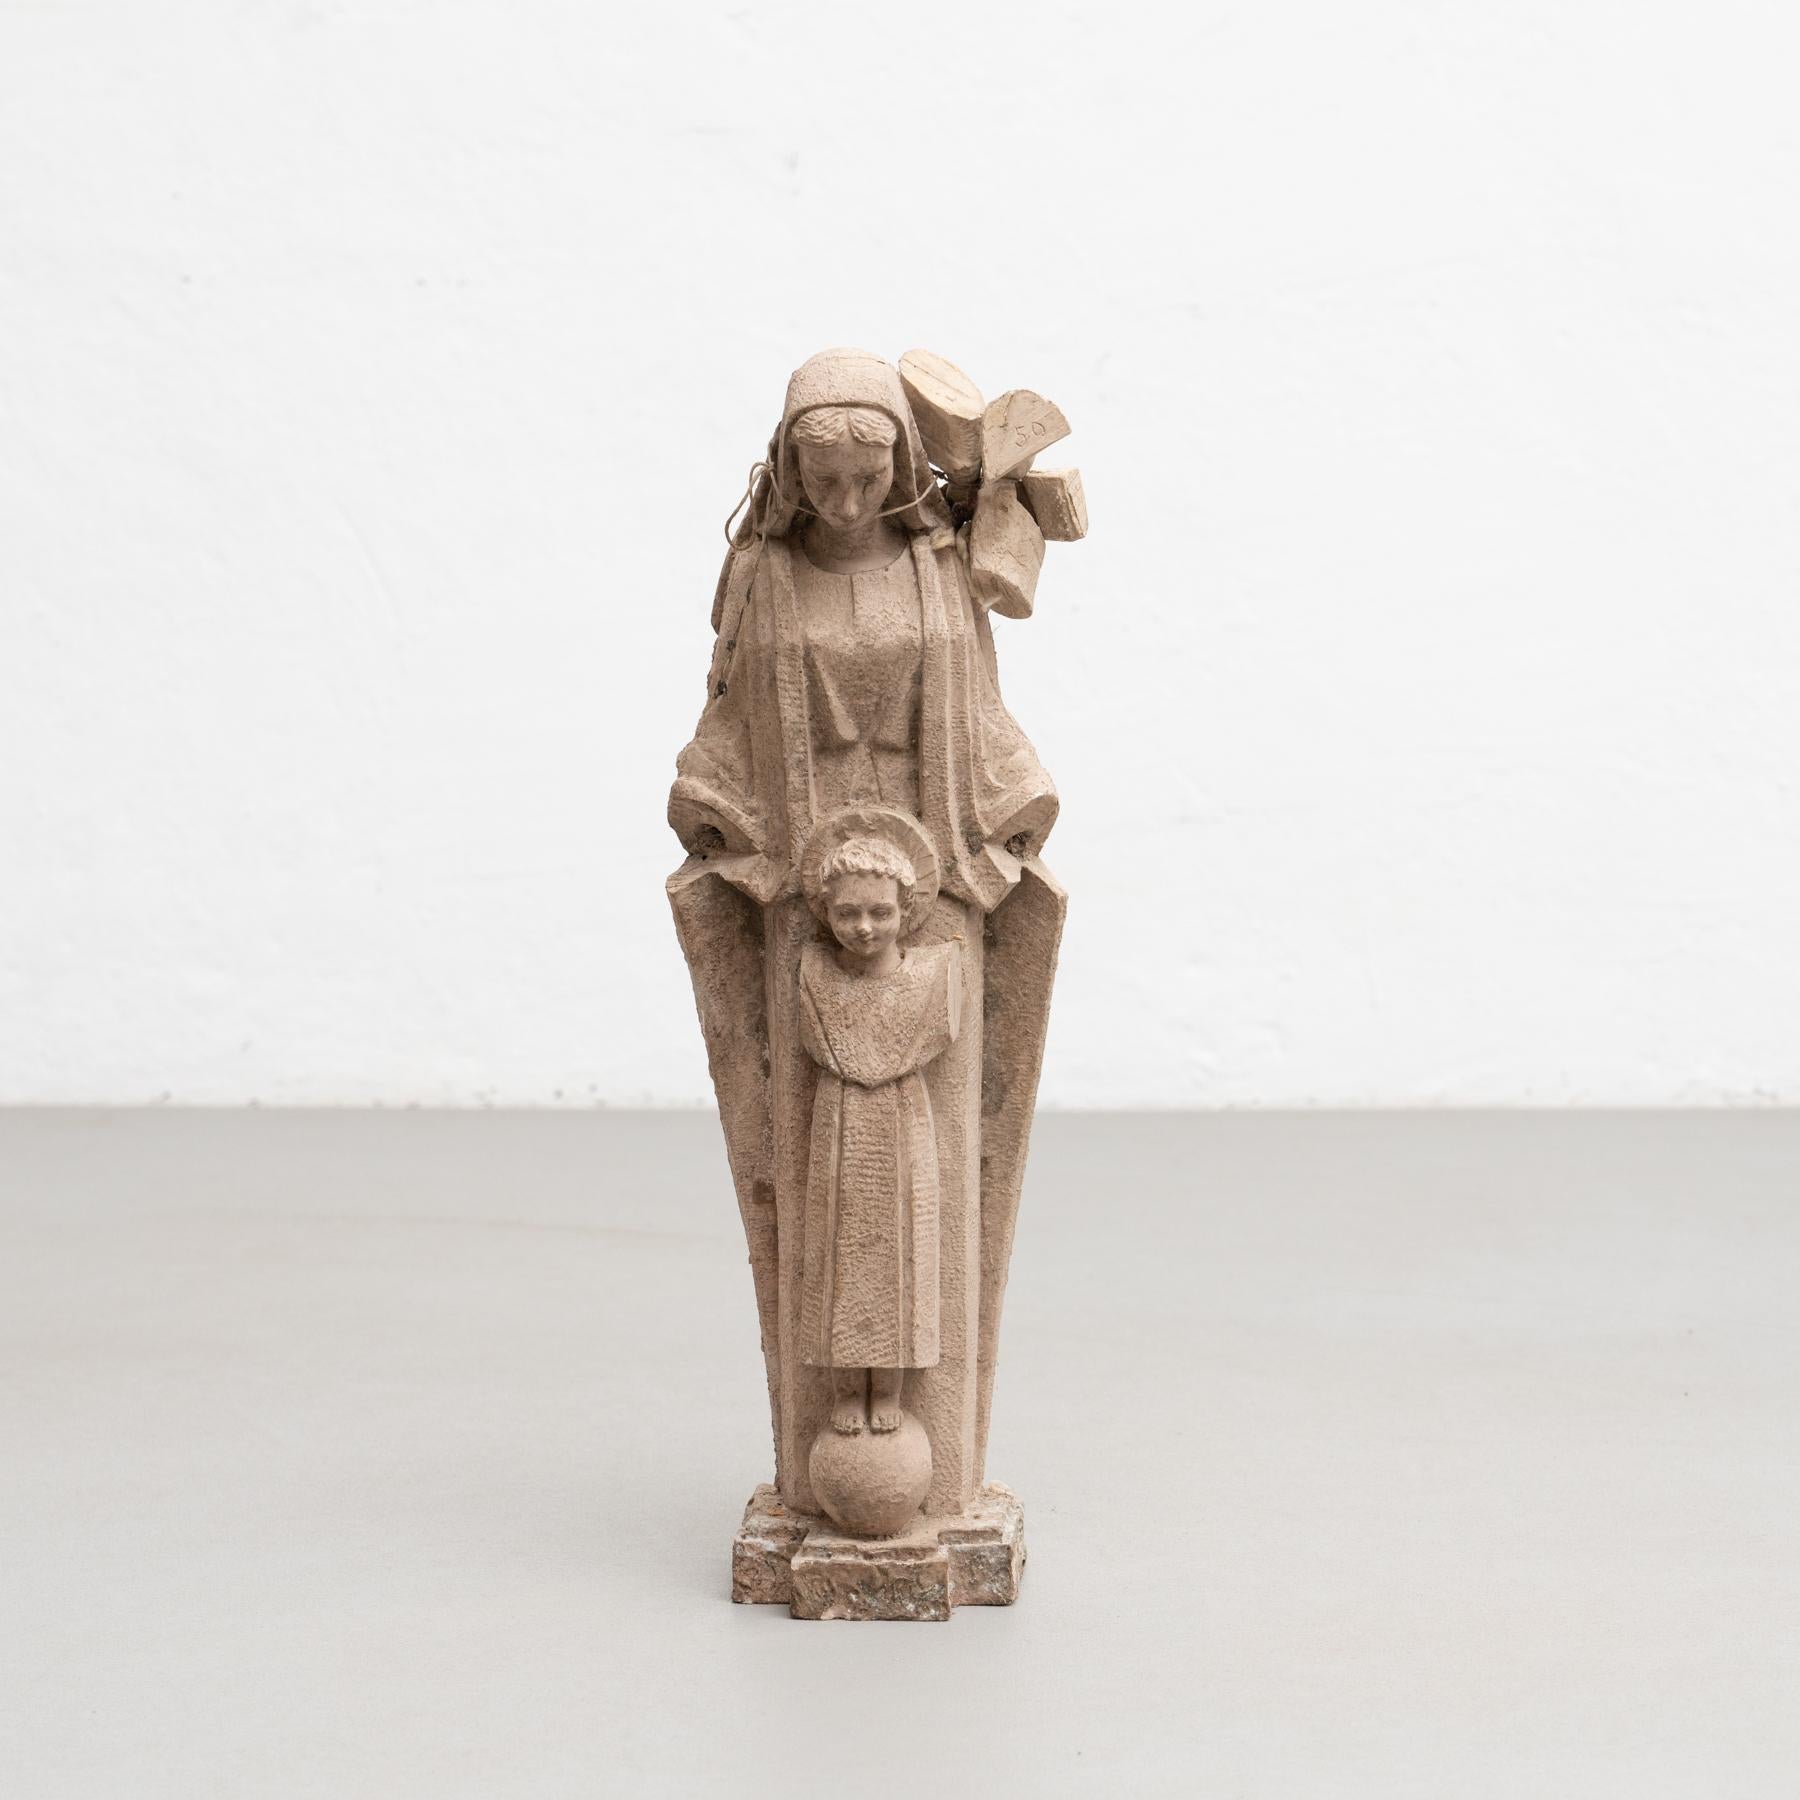 Figure religieuse traditionnelle en plâtre représentant une vierge.

Fabriqué dans un atelier catalan traditionnel à Olot, en Espagne, vers 1950.

En état d'origine, avec une usure mineure conforme à l'âge et à l'utilisation, préservant une